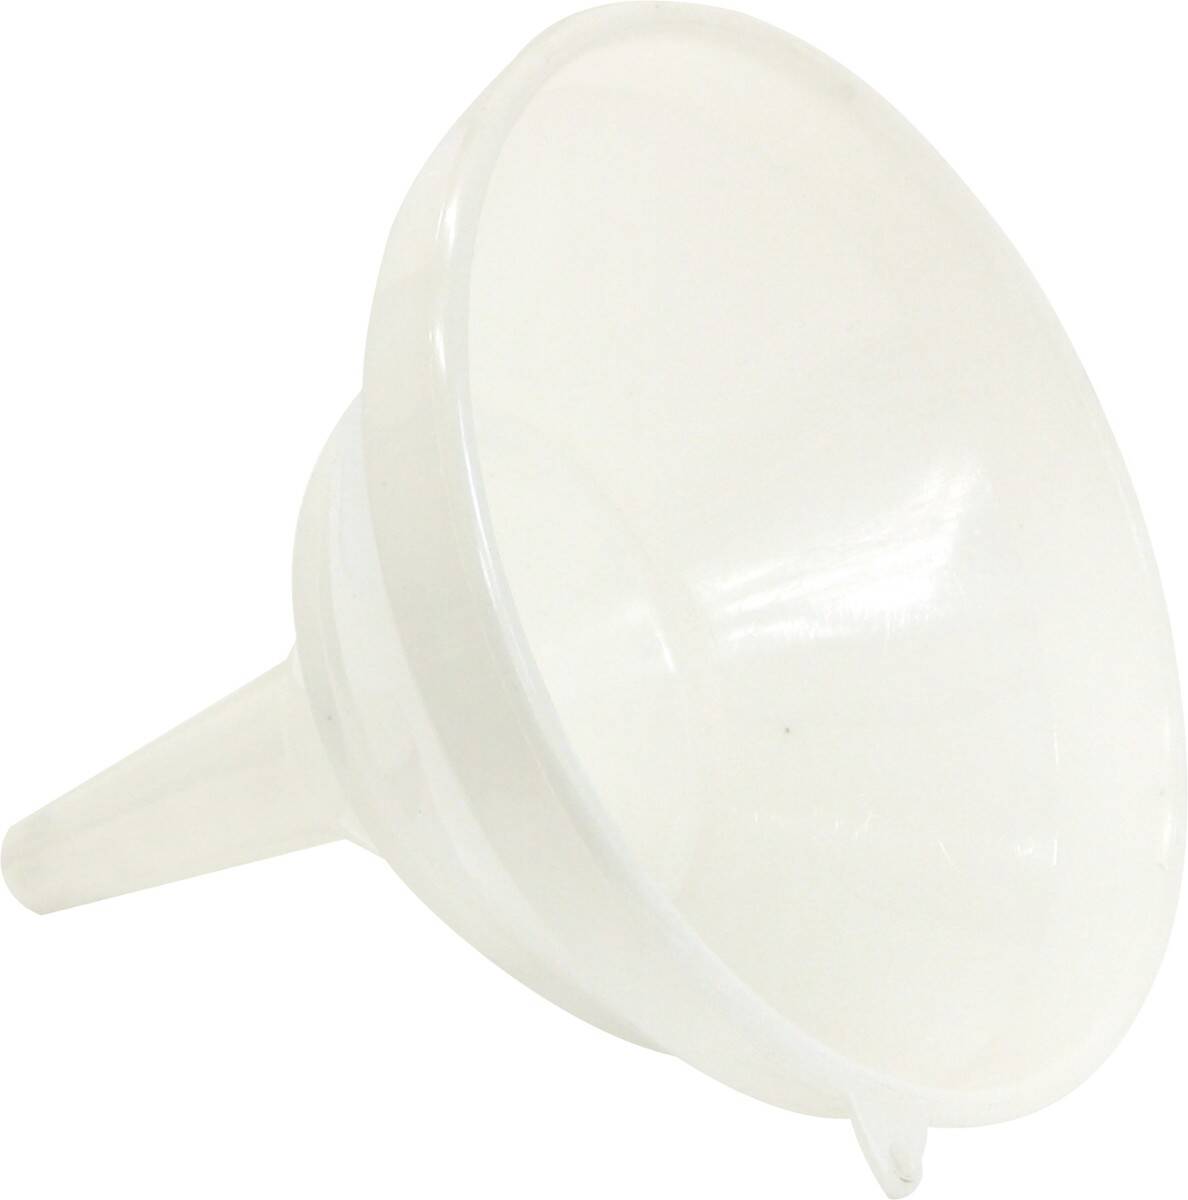 Lejek plastikowy 25 cm biały (Zdjęcie 1)